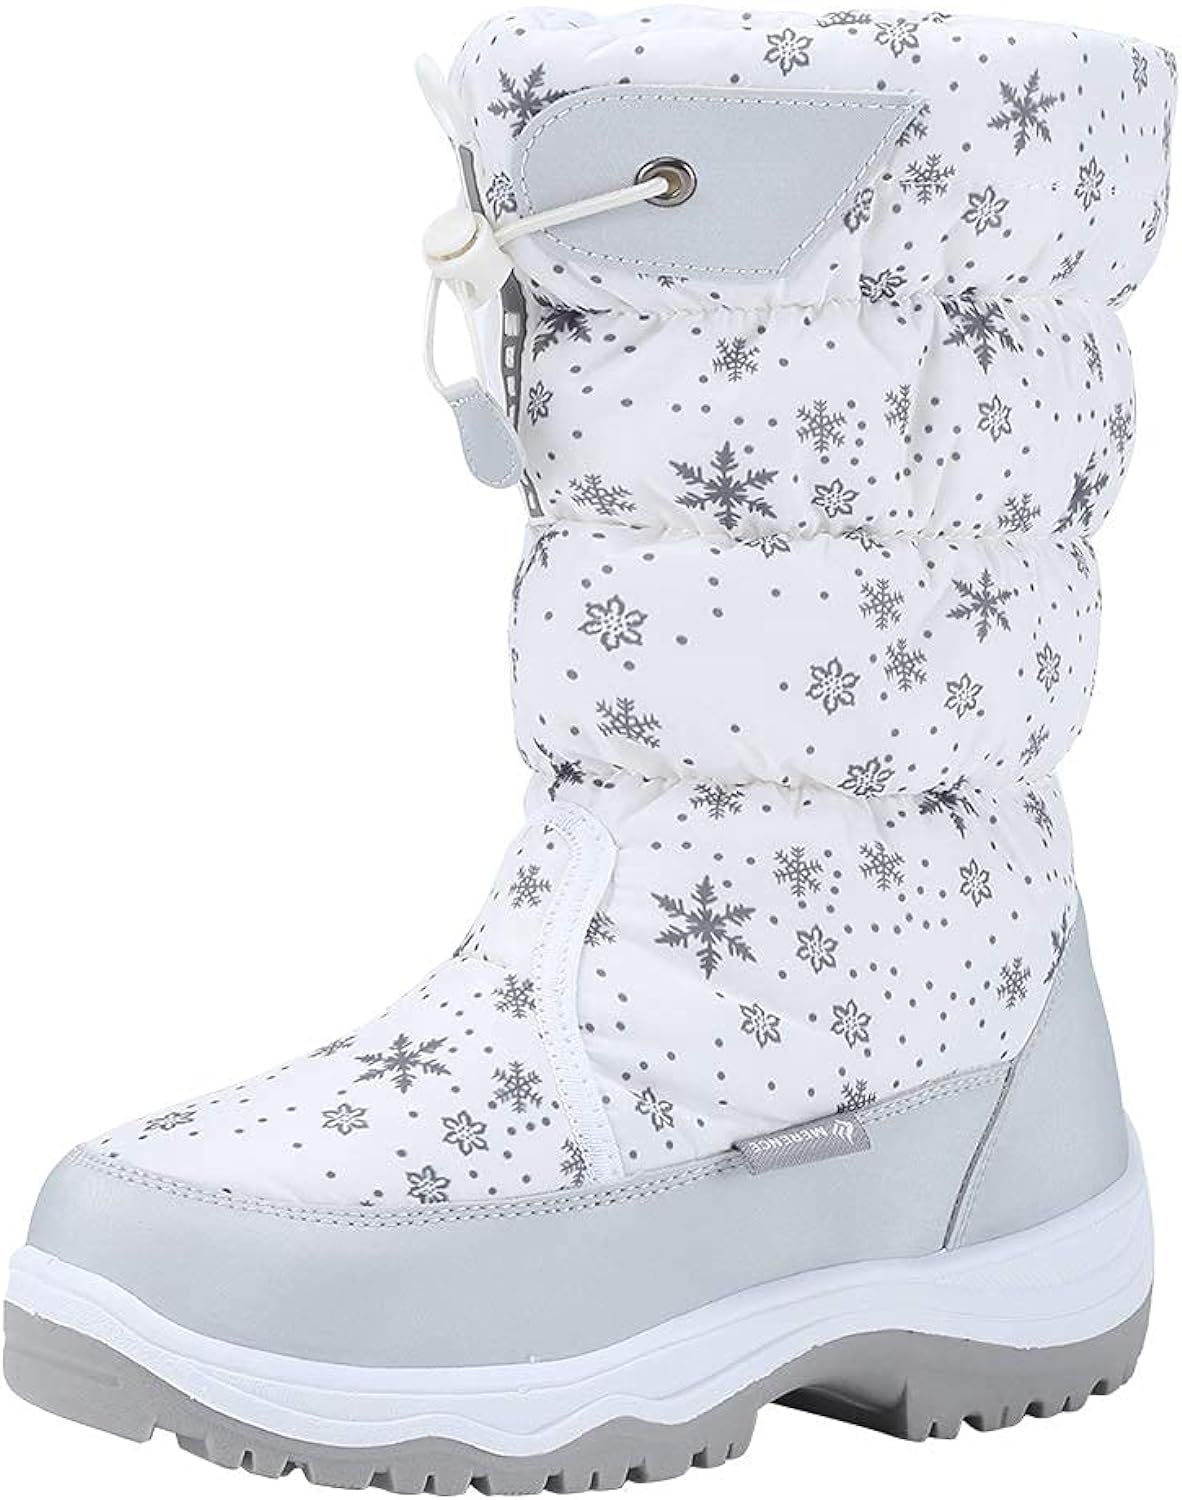 Women's Snow Boots Winter II Waterproof Fur Lined Frosty Warm Anti-Slip Boot | Amazon (US)